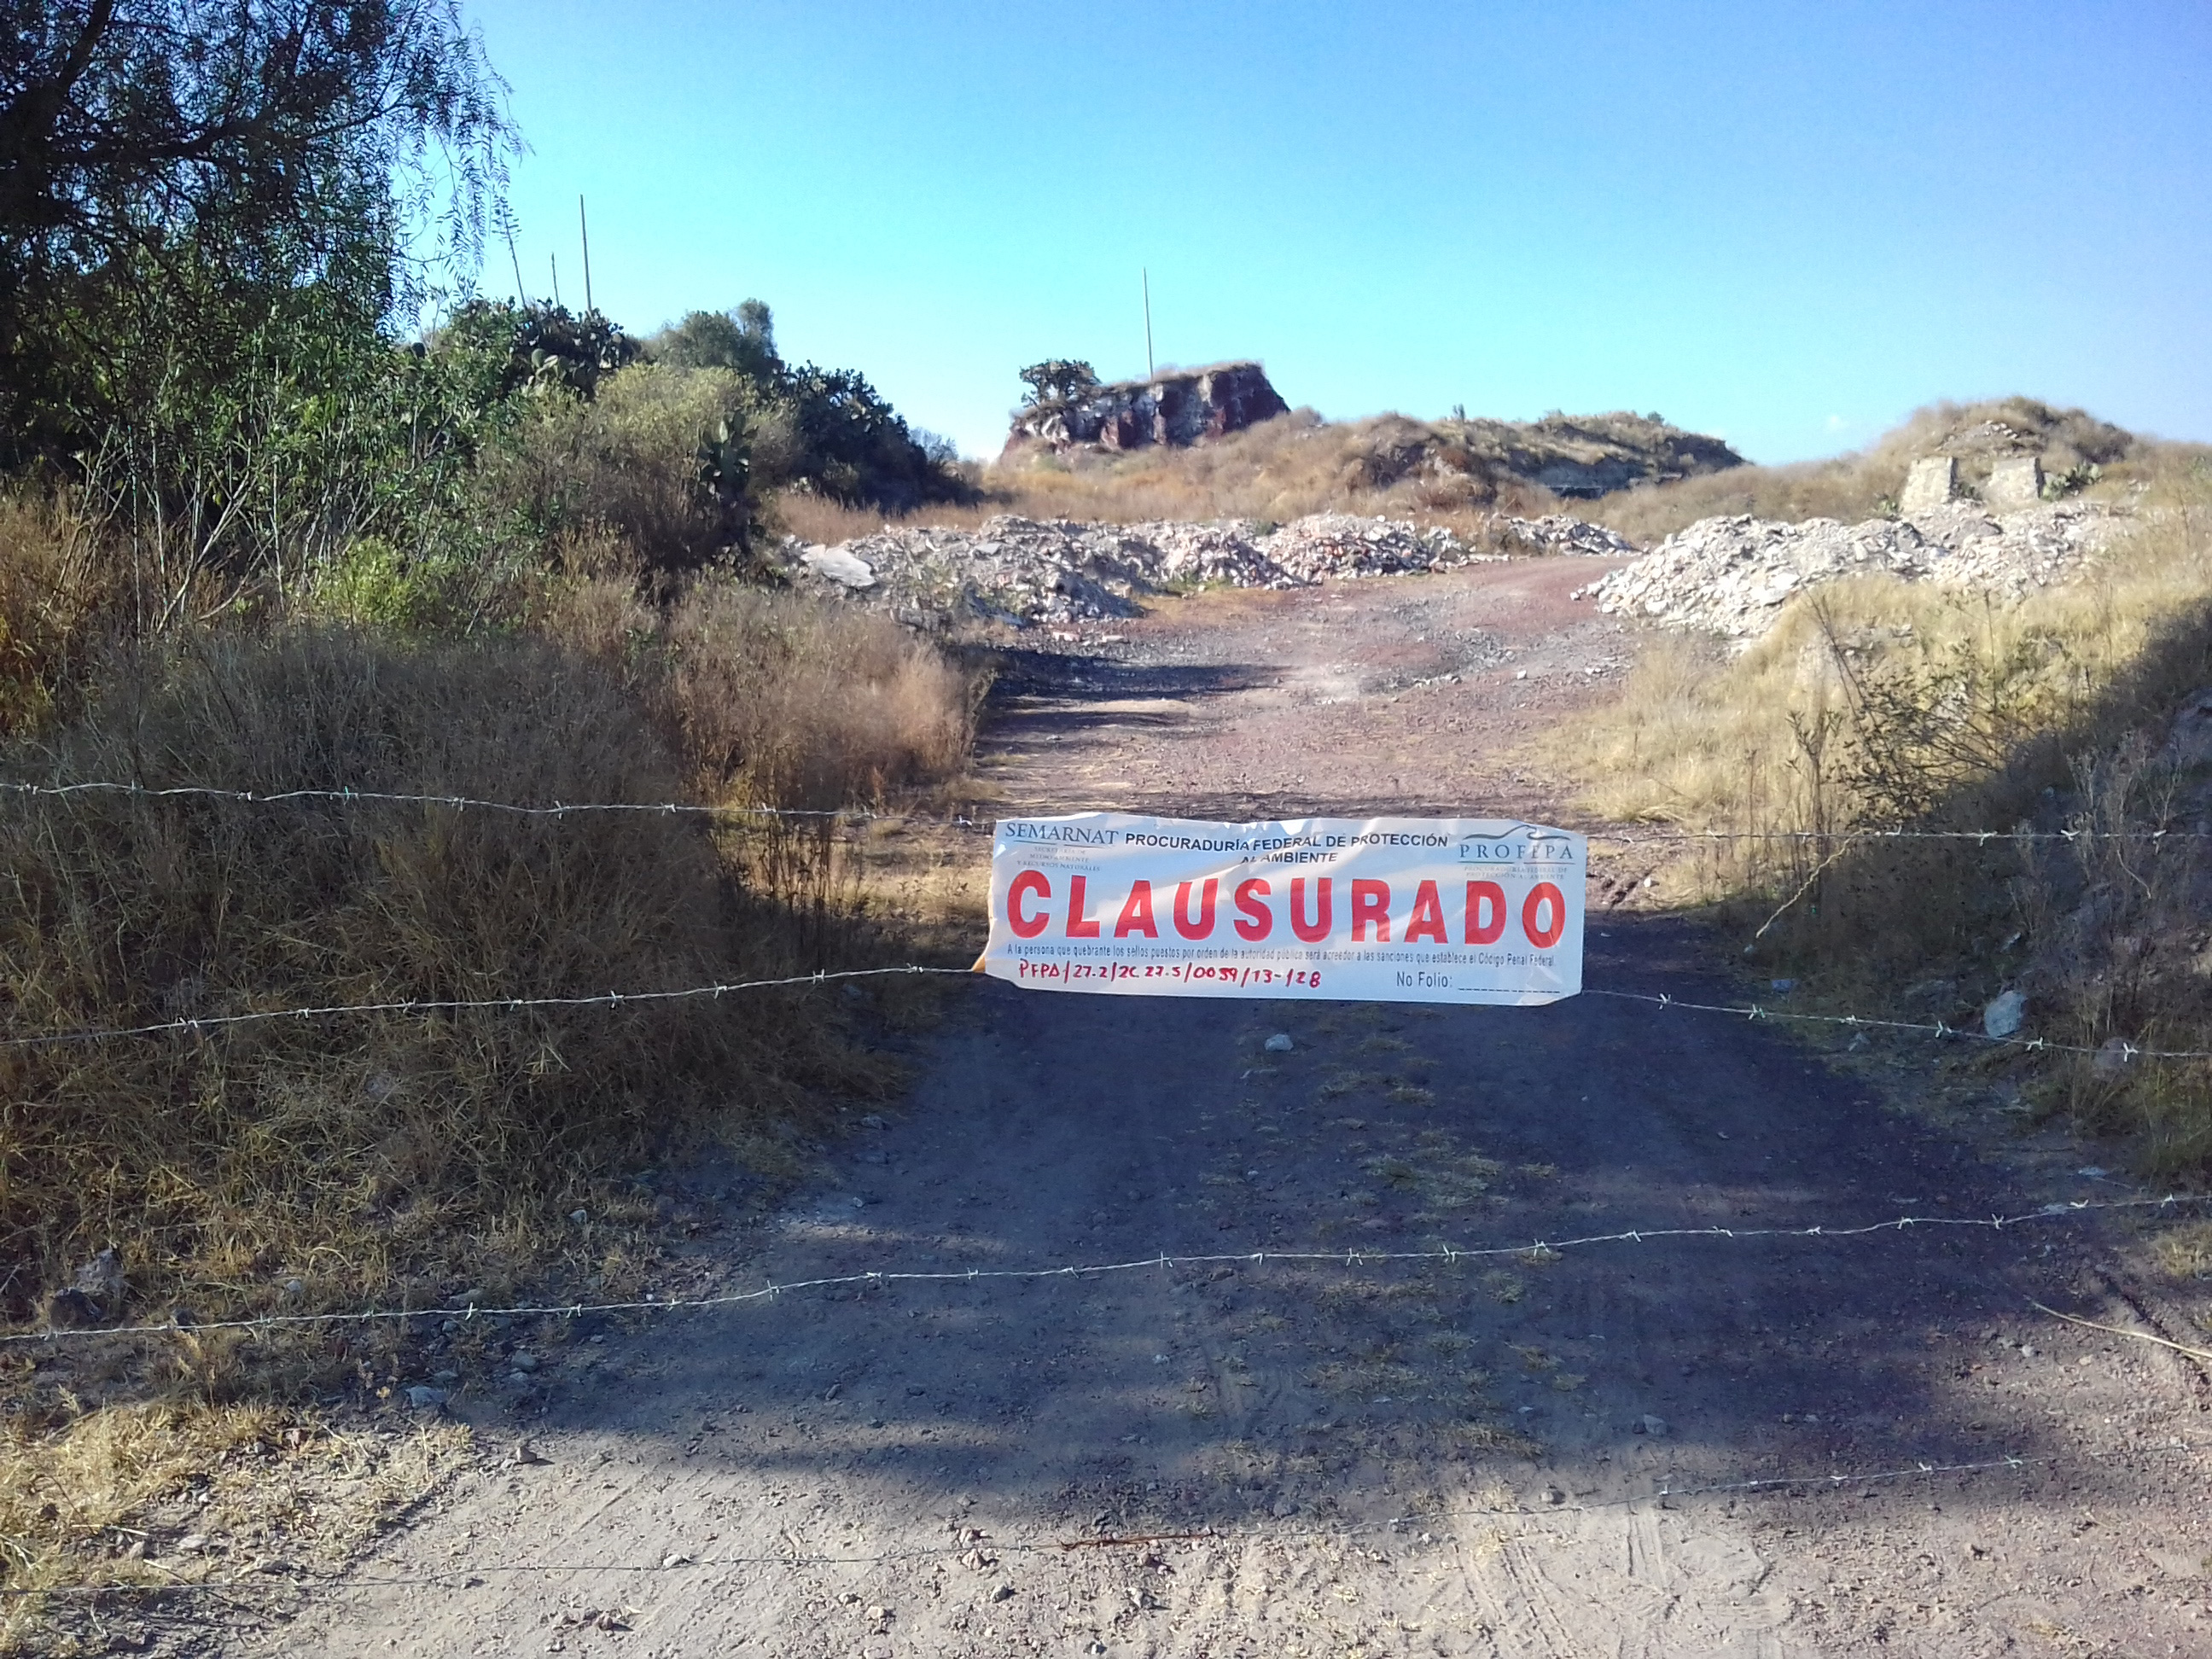 Construcción de Audi ocasiona daños en tierras de Chiapa y Nopalucan